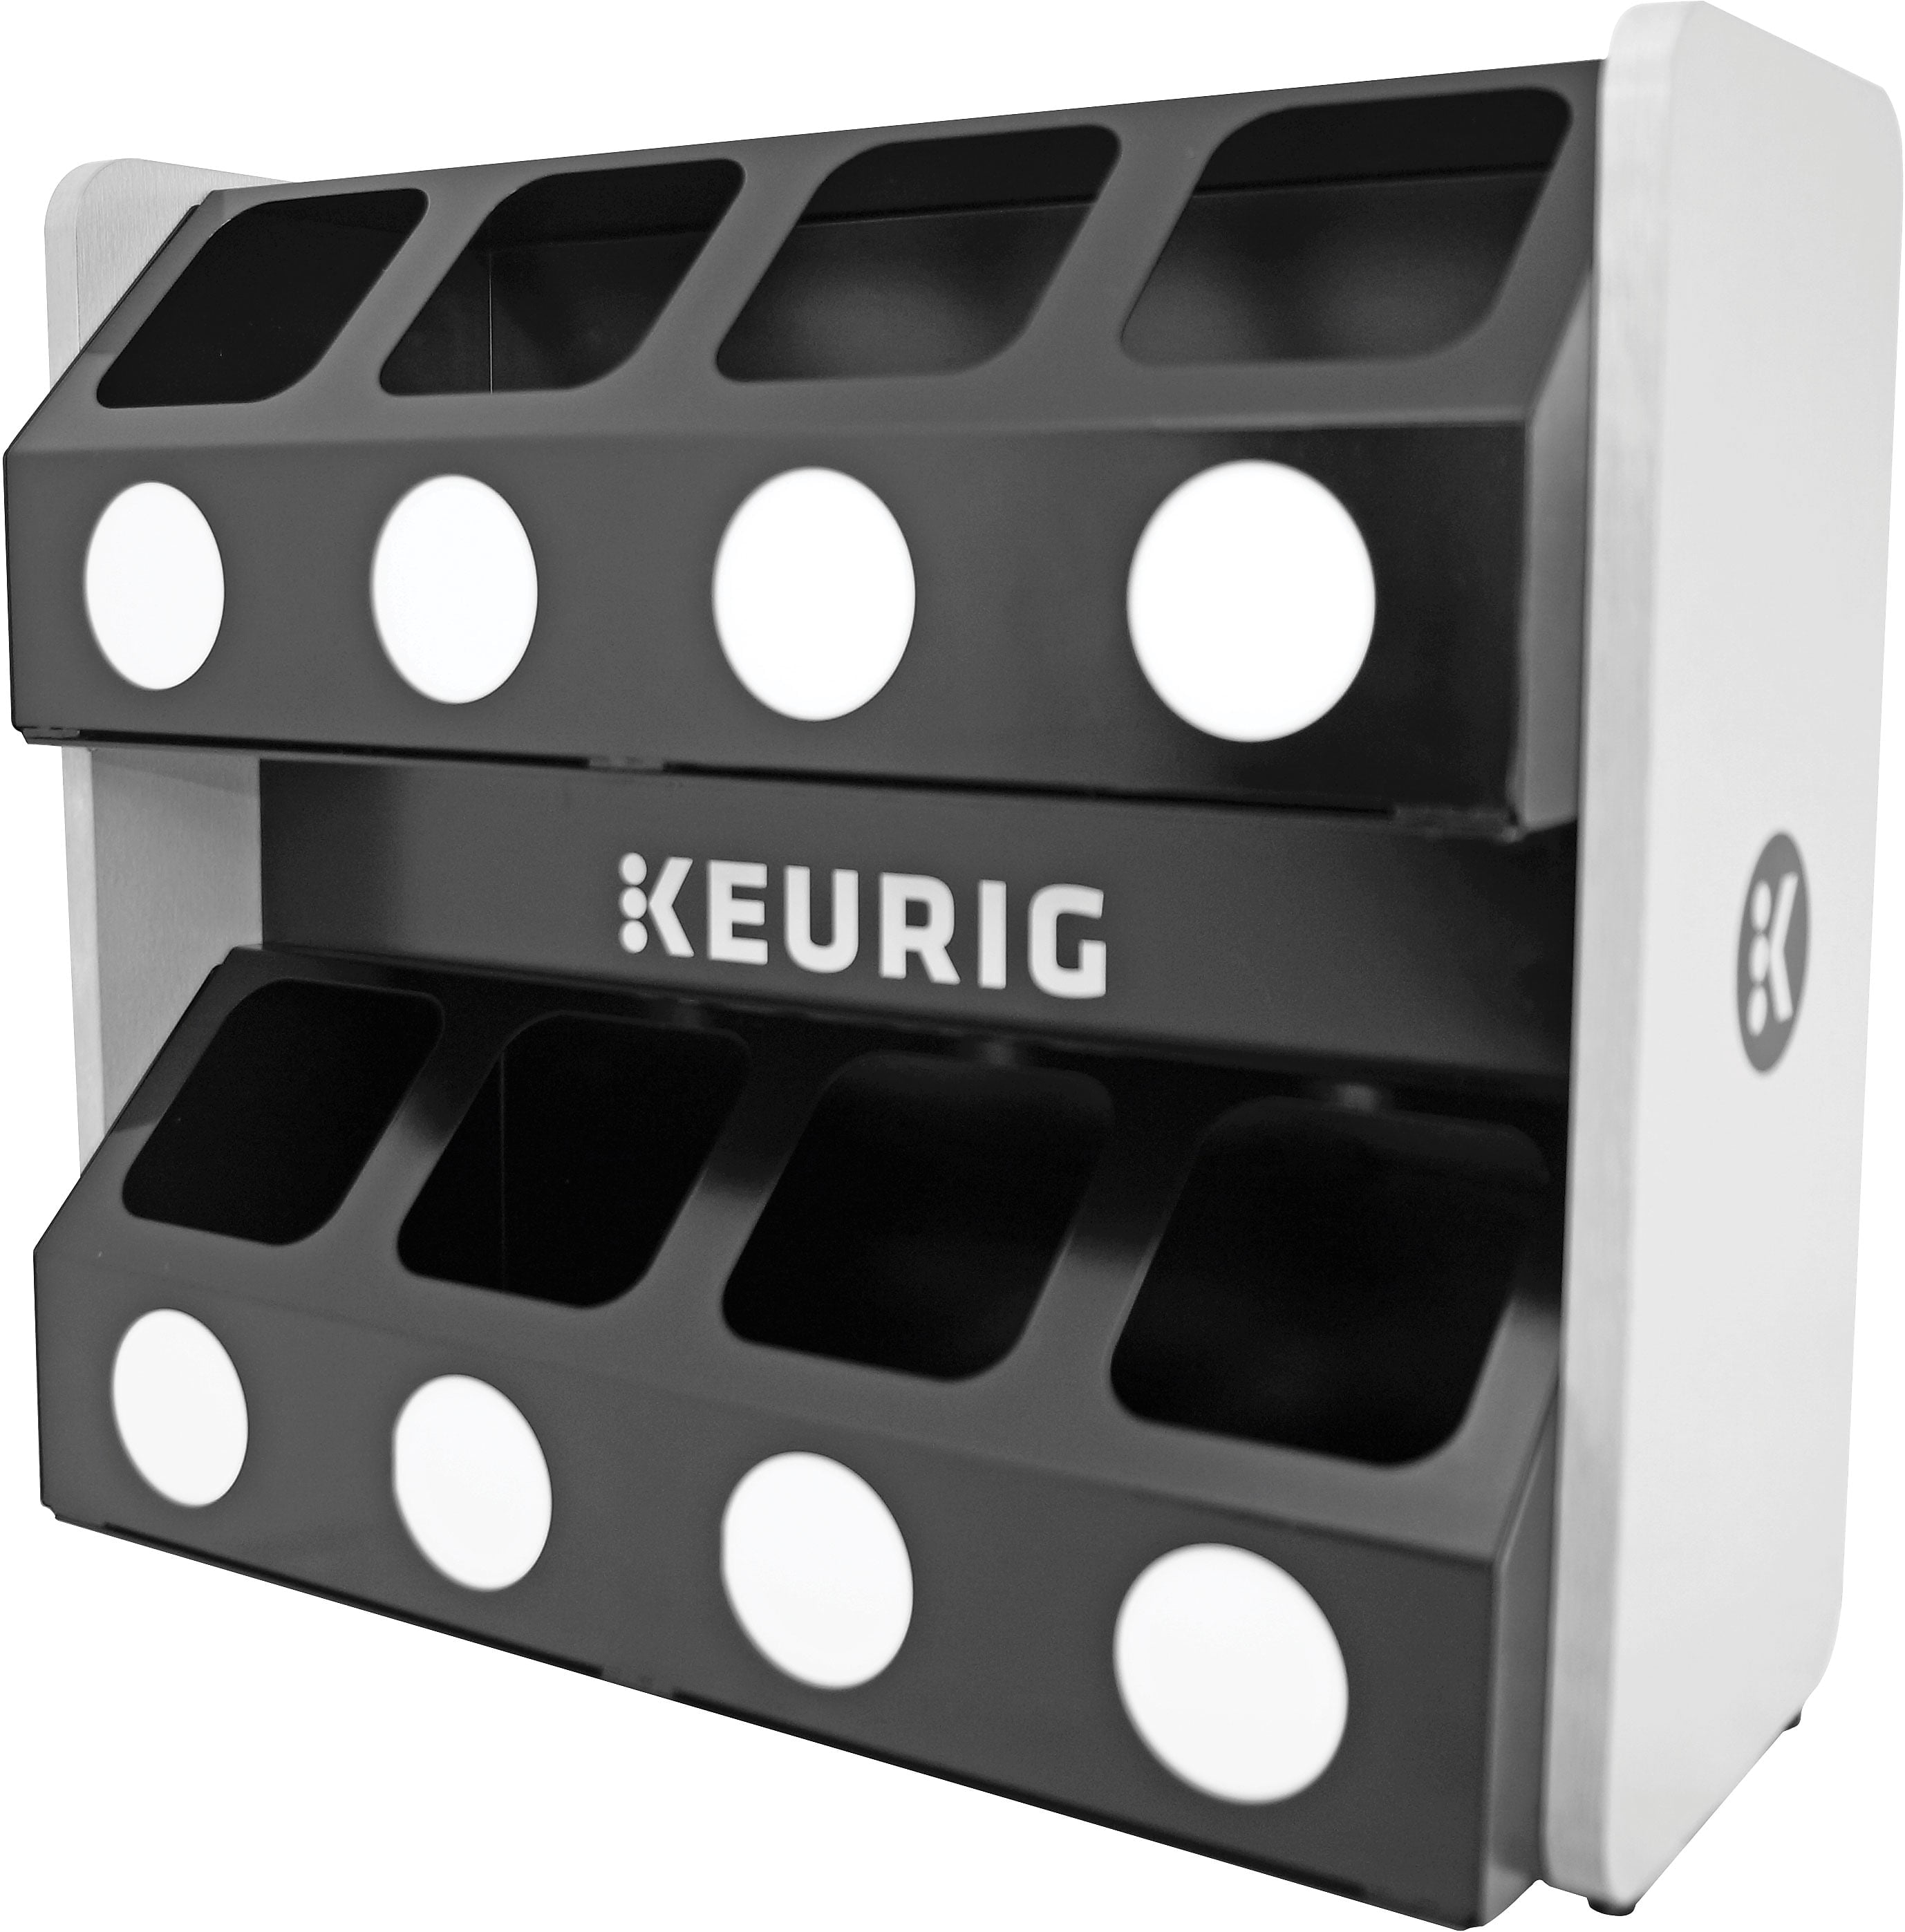 Keurig Premium 8-Sleeve K-Cup Pod Storage Rack New In Box! 